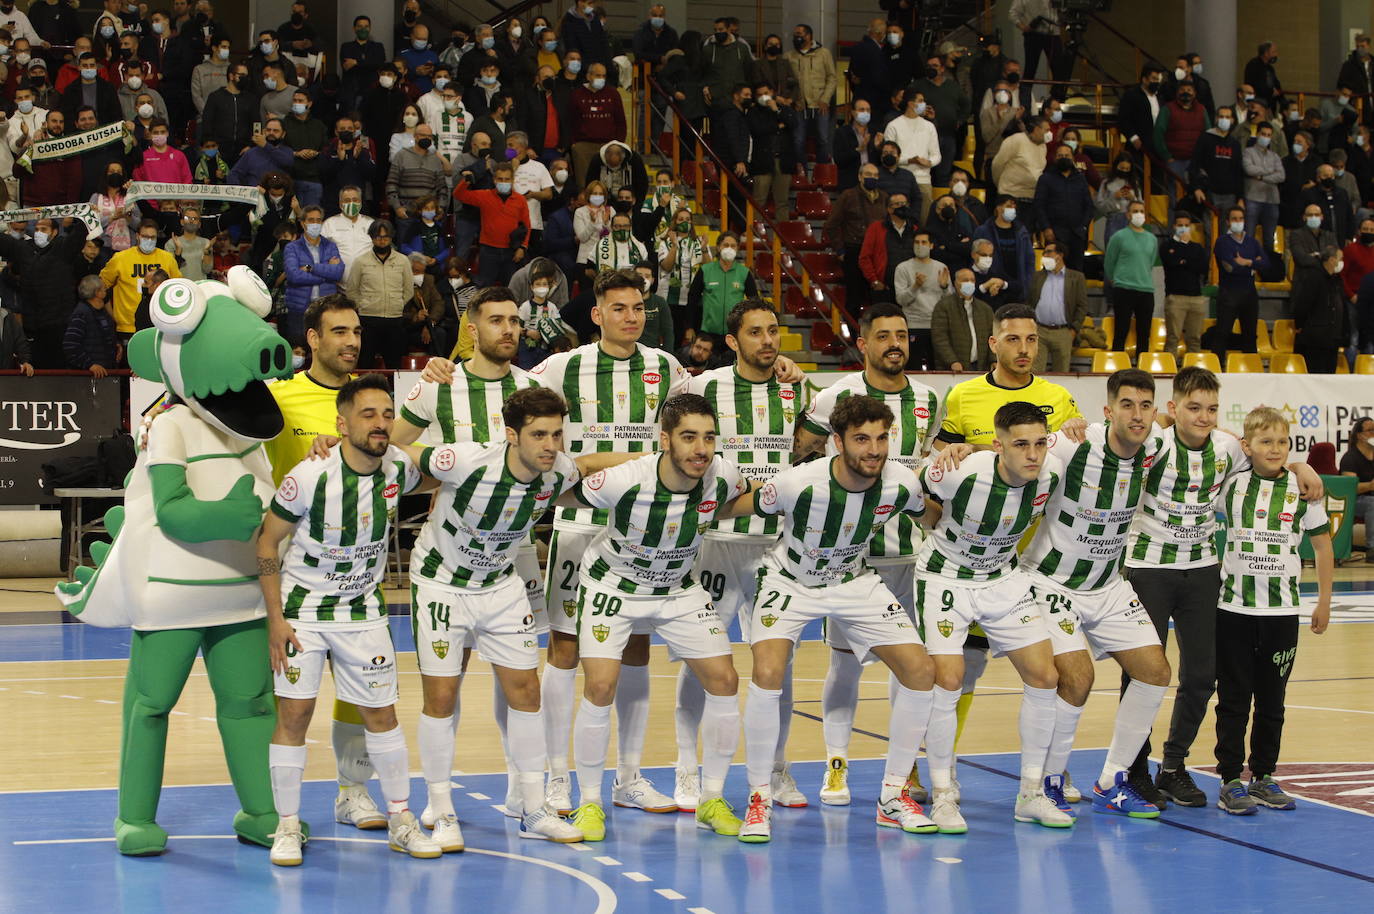 El Córdoba Patrimonio - Betis Futsal, en imágenes